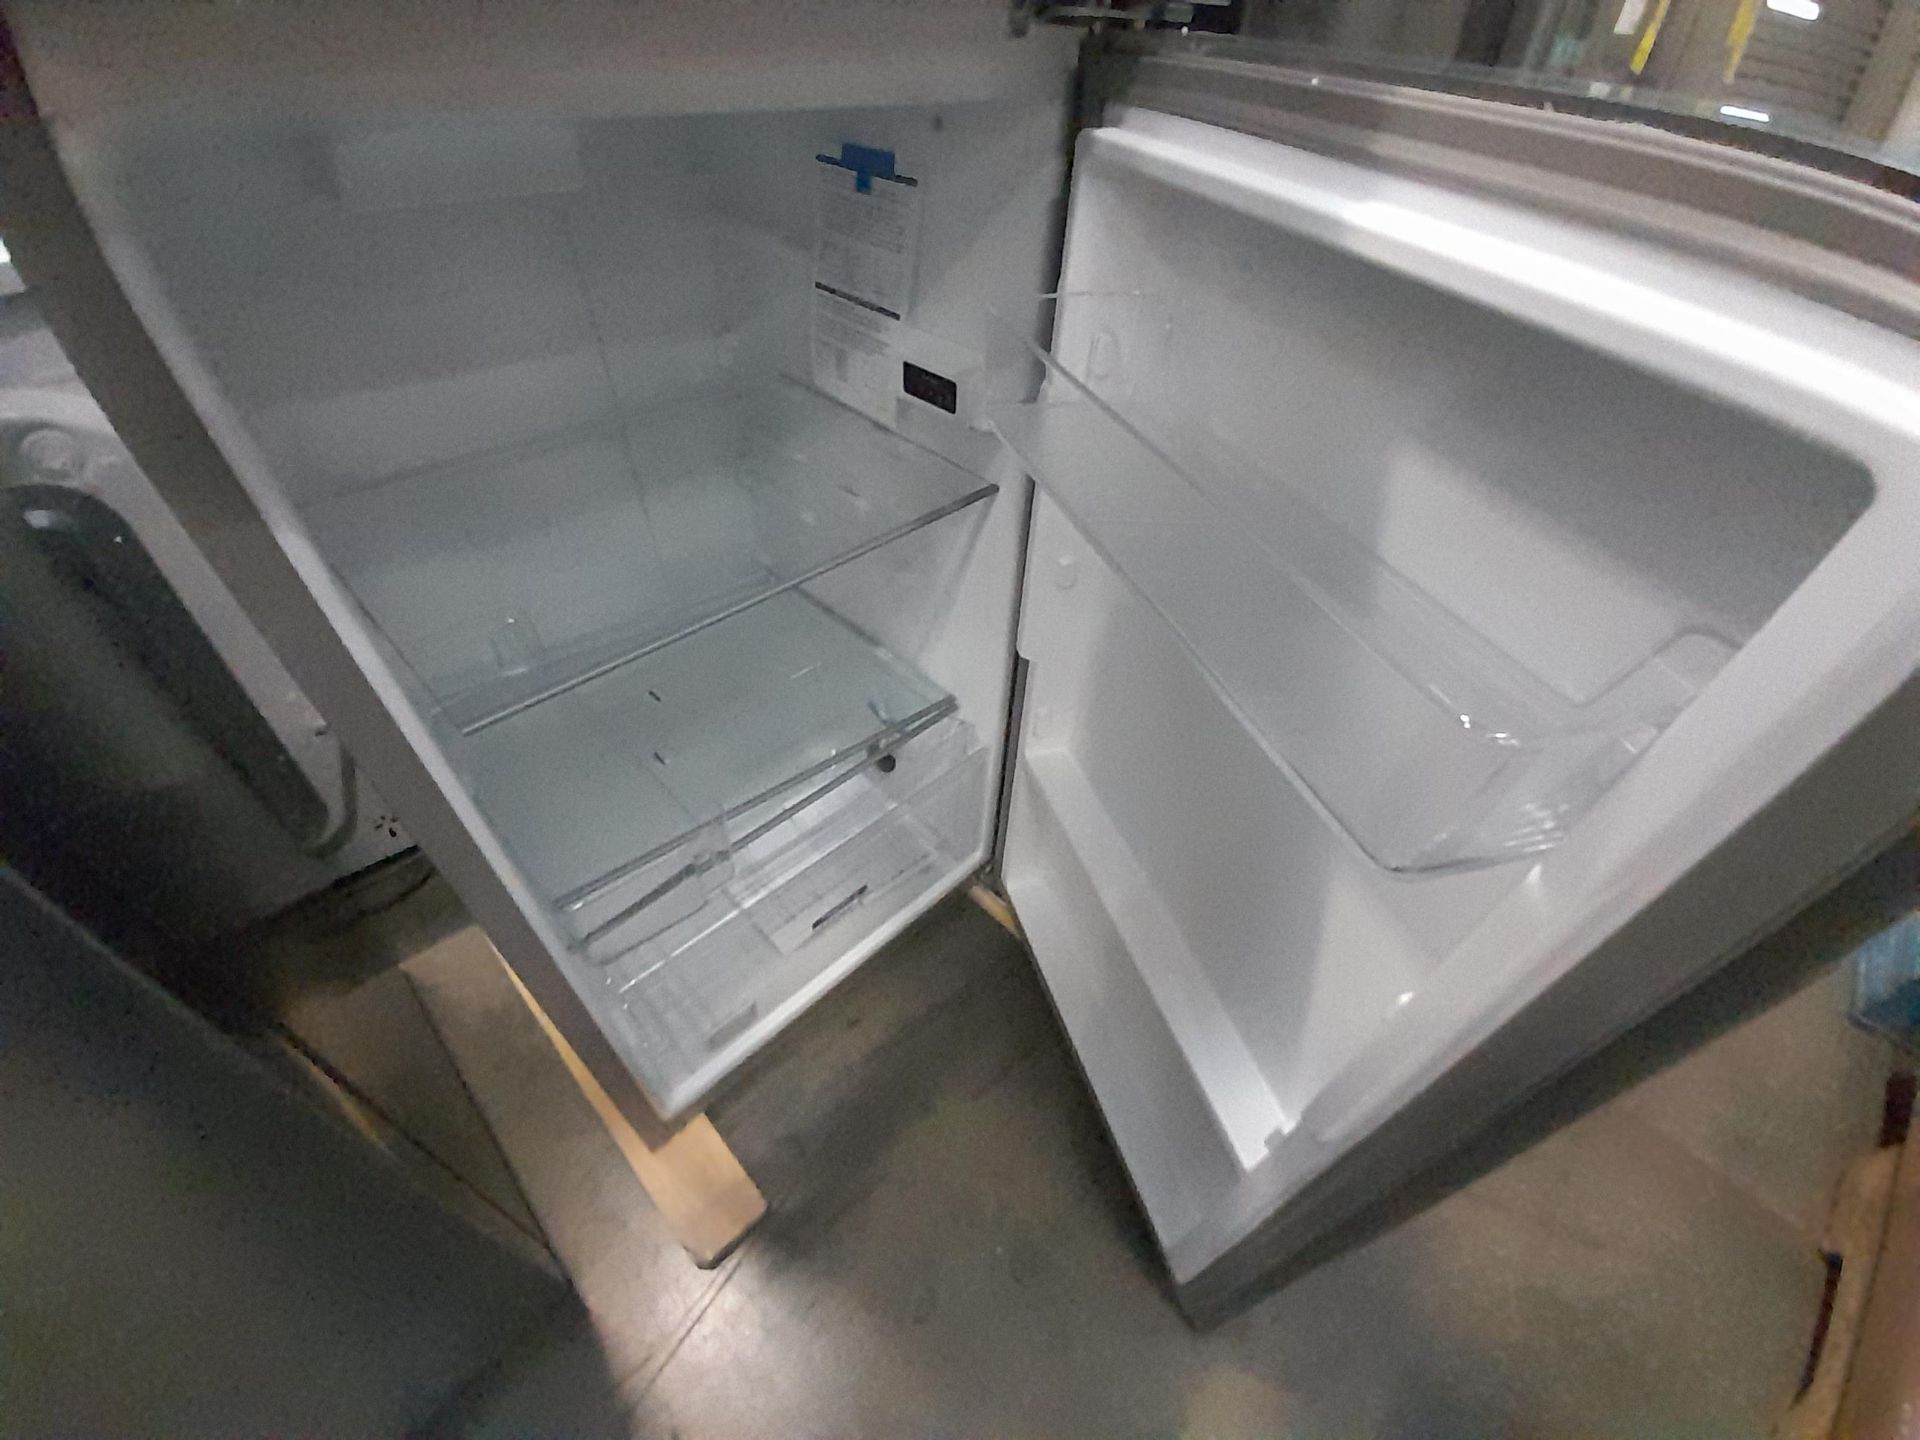 Lote de 2 refrigeradores contiene: 1 refrigerador Marca WHIRPOOL, Modelo WT1230K, Serie ND, Color G - Image 6 of 8